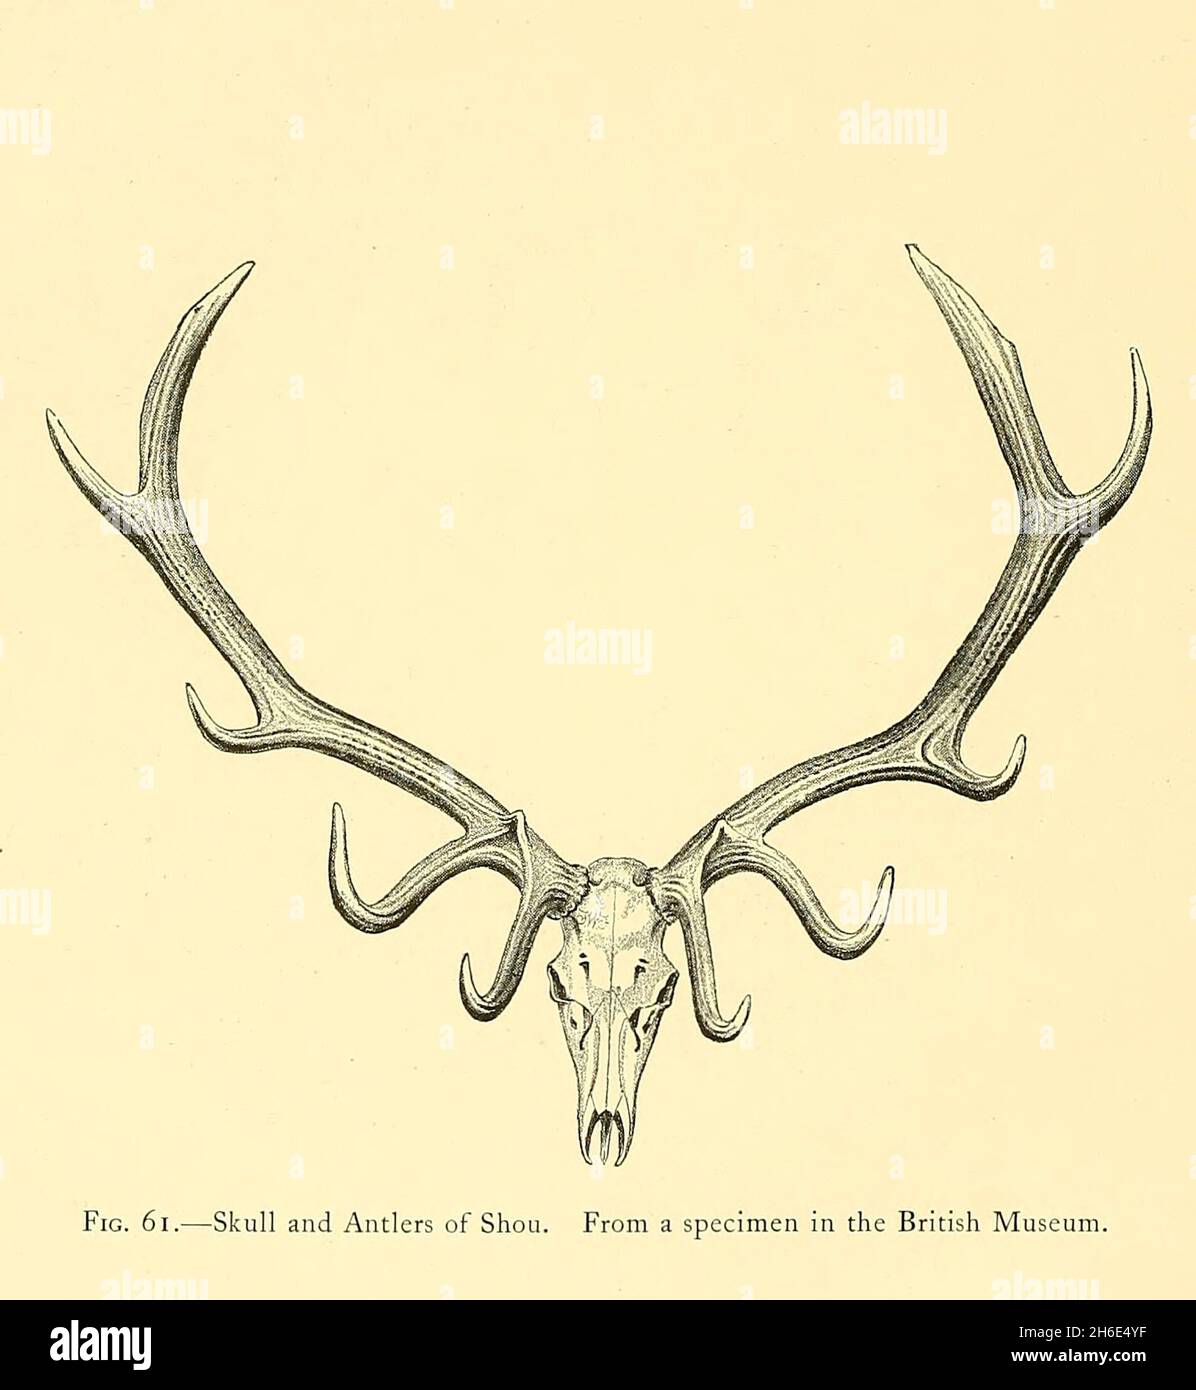 Cranio e Antlers di Shou. Dal libro " il grande e piccolo gioco di India, Birmania, & Tibet " di Richard Lydekker, pubblicato a Londra da R. Ward nel 1900 Foto Stock